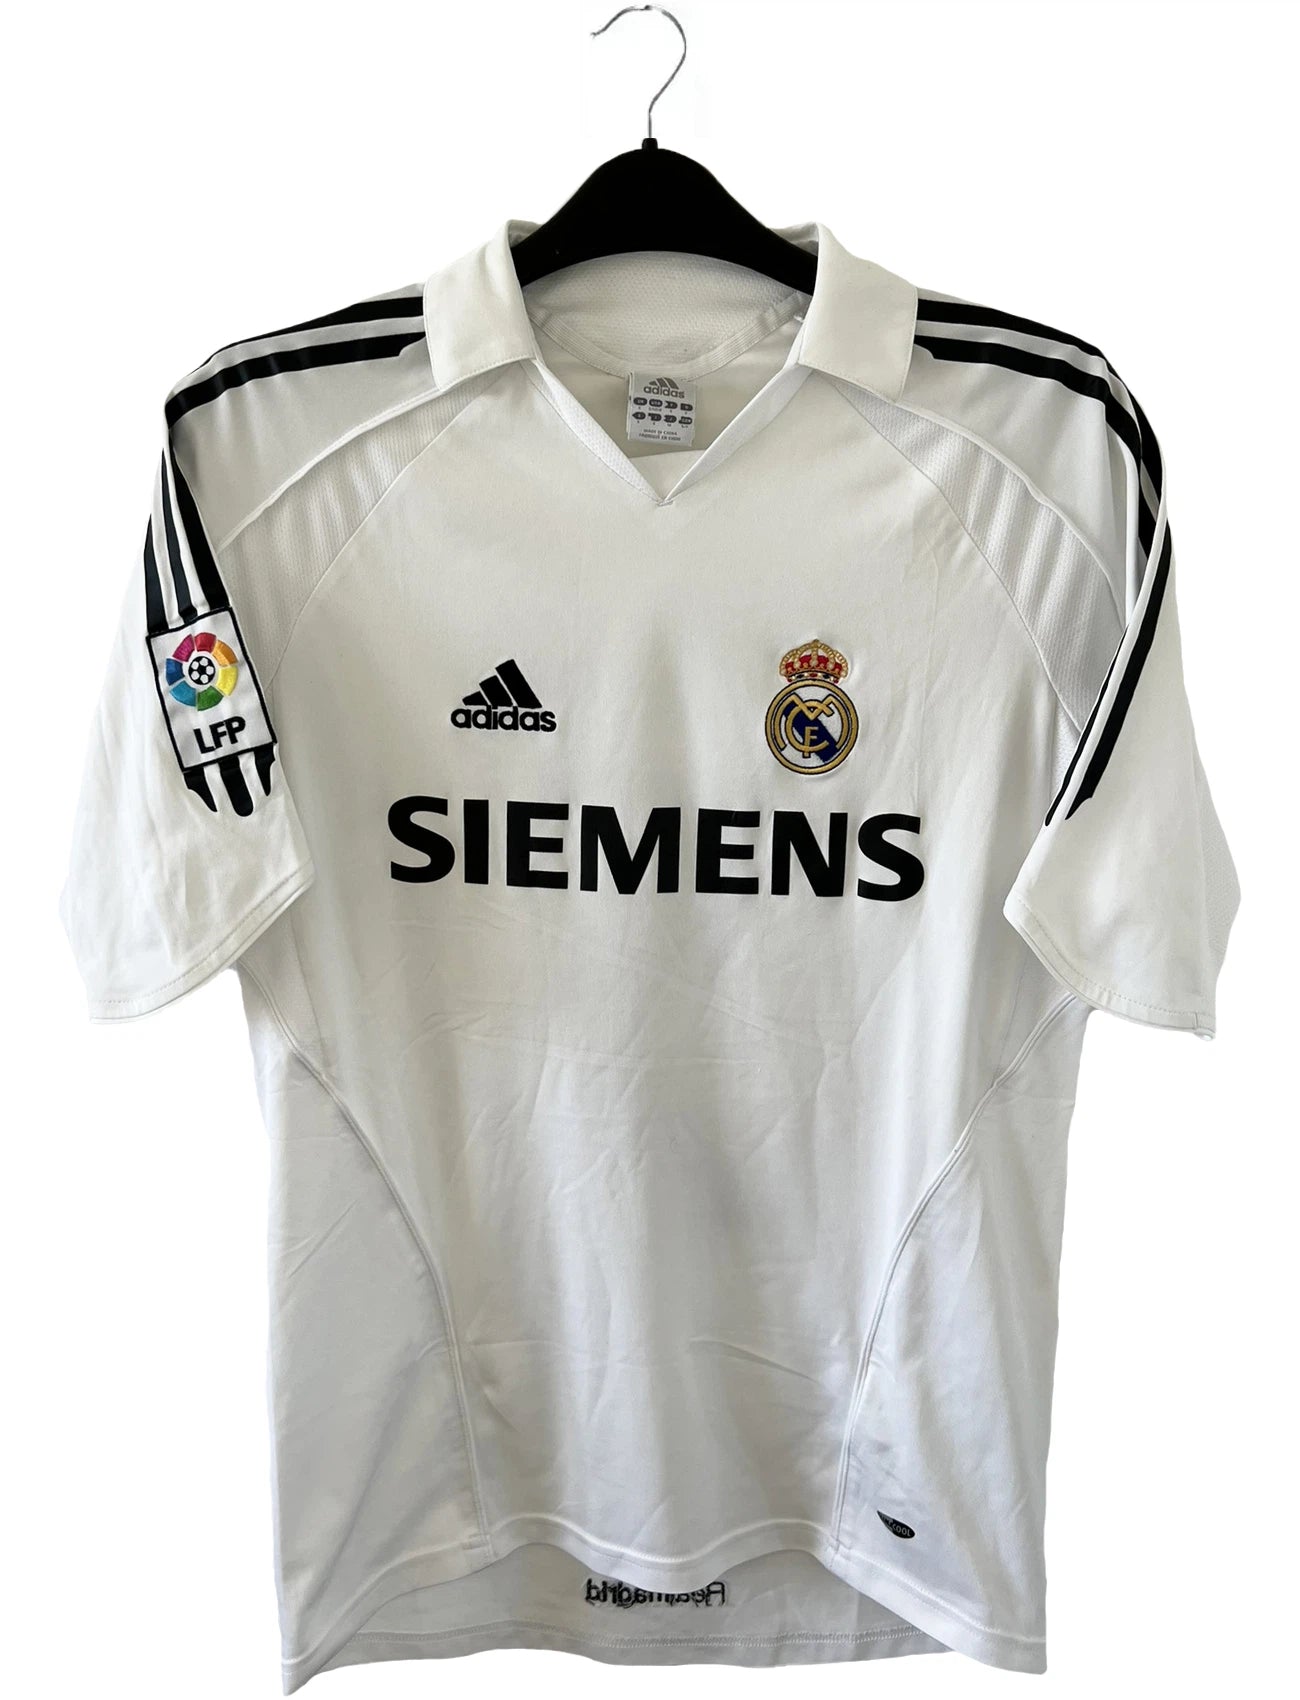 Maillot de foot vintage domicile du Real Madrid de la saison 2005/2006. Le maillot est de couleur blanc et noir. On peut retrouver l'équipementier adidas et le sponsor siemens. Le maillot est floqué du numéro 5 Zinedine Zidane. Le maillot possède l'étiquette d'authenticité avec les numéros 109879. Il s'agit d'un maillot authentique d'époque.